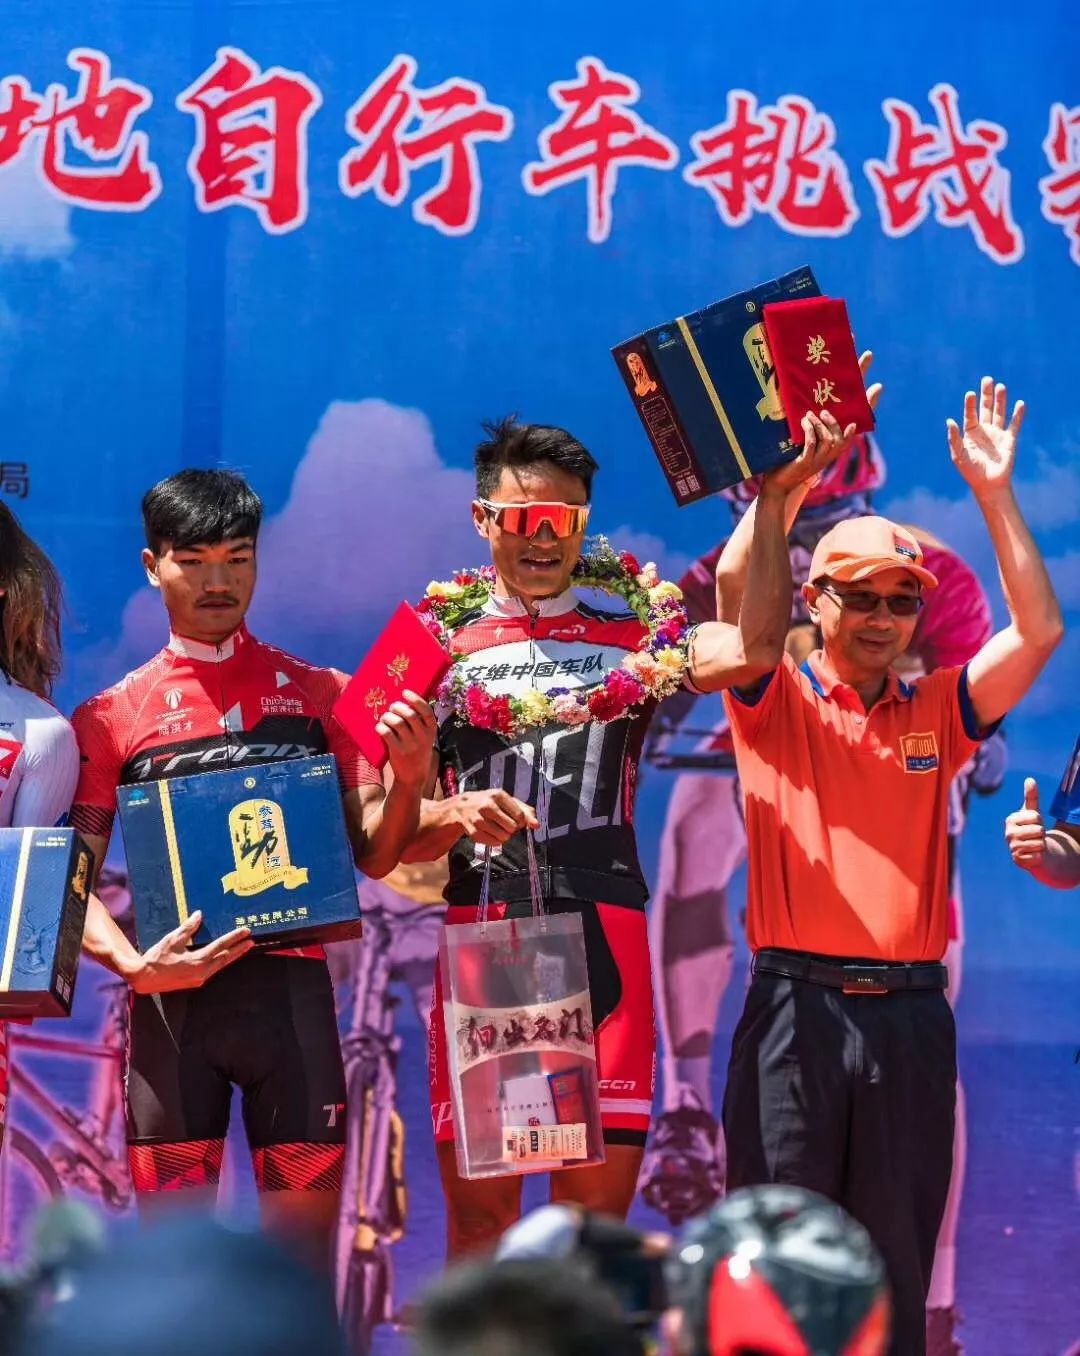 魏魁又赢了 2018甘南藏地传奇自行车赛